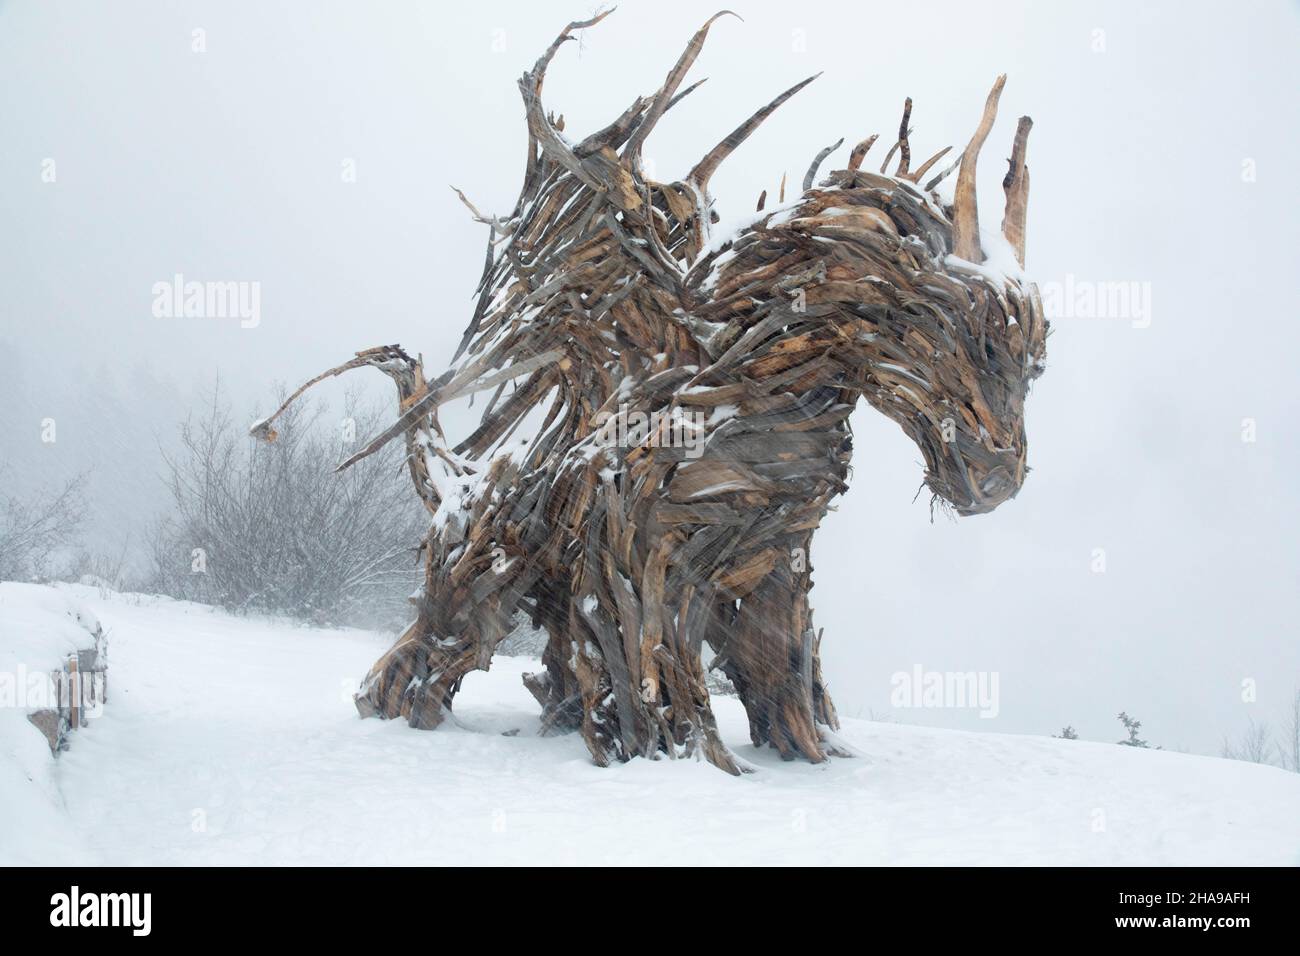 Drago Vaia in Lavarone; The largest wooden dragon in Europe in Lavarone, Trentino Alto Adige. Stock Photo